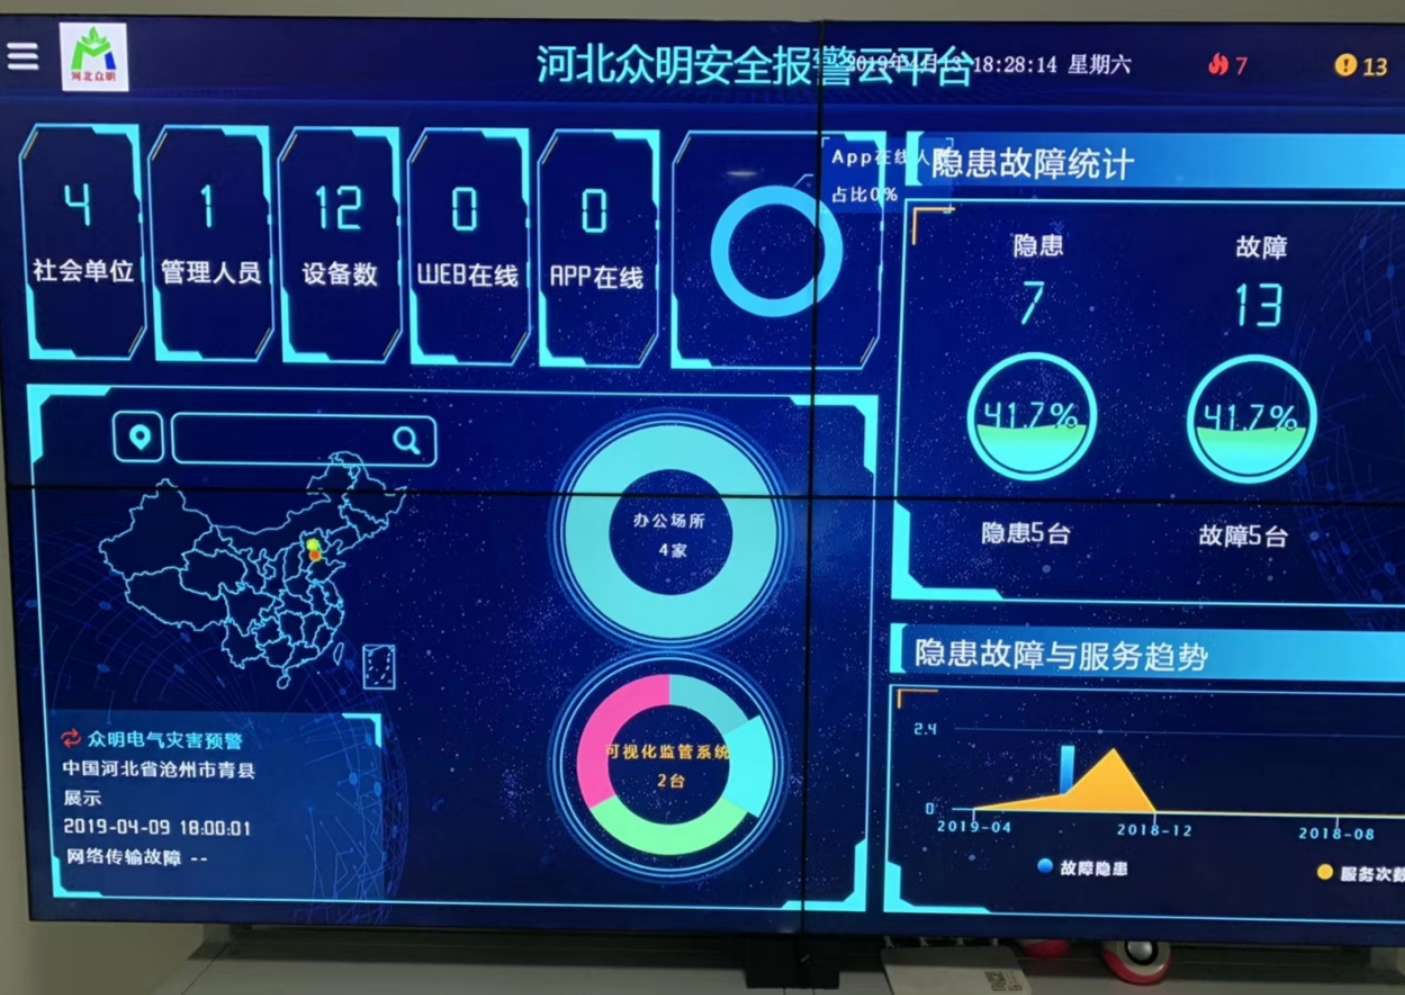 智能安全设备生产商伟华科技 天津 有限公司完成1800万人民币天使轮融资(图1)